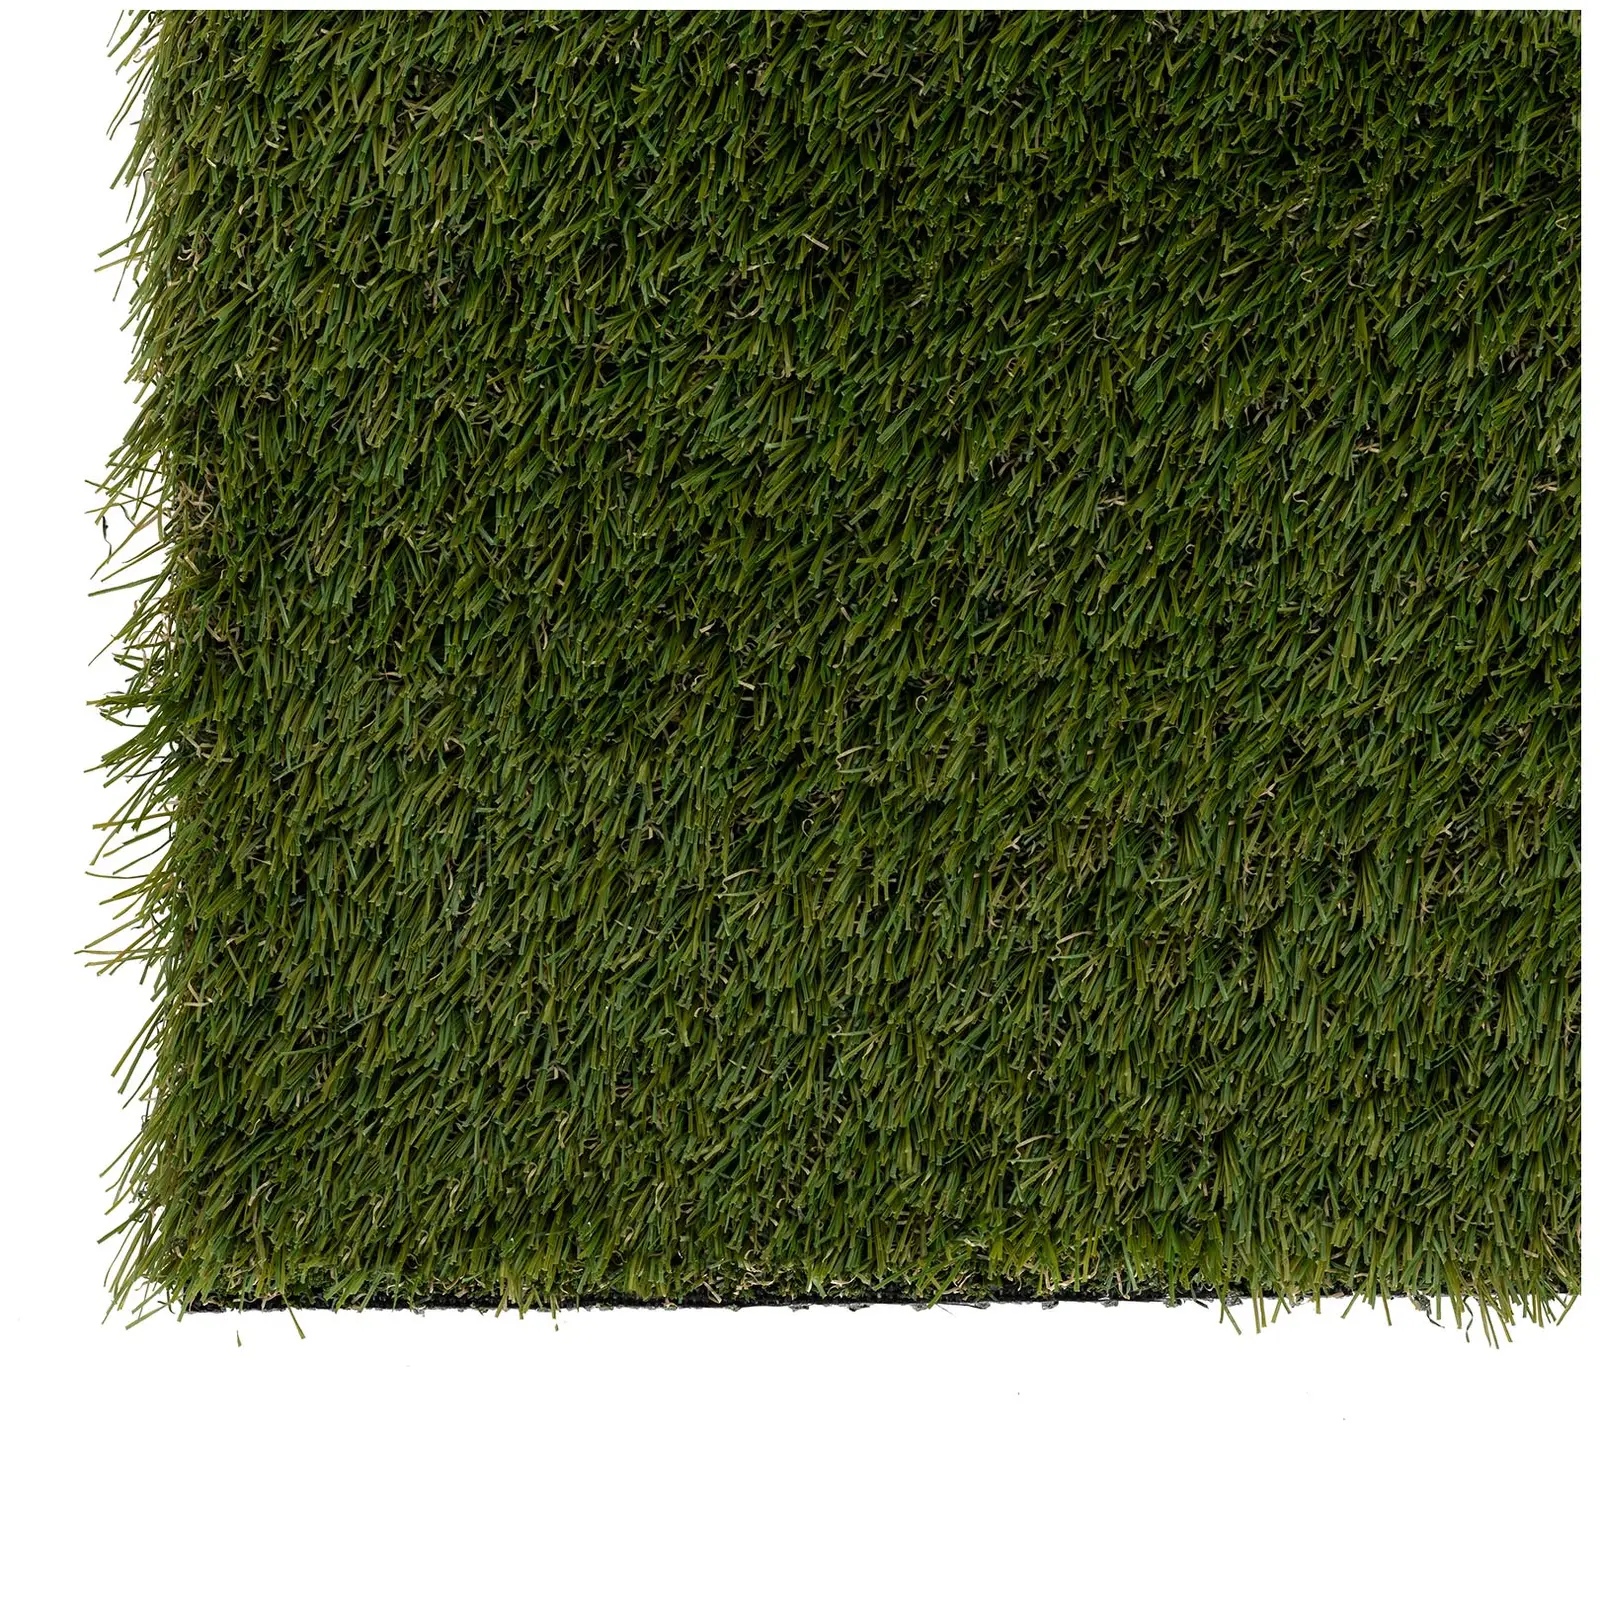 Umelý trávnik - 403 x 100 cm - výška: 30 mm - hustota stehu: 20/10 cm - odolný proti UV žiareniu